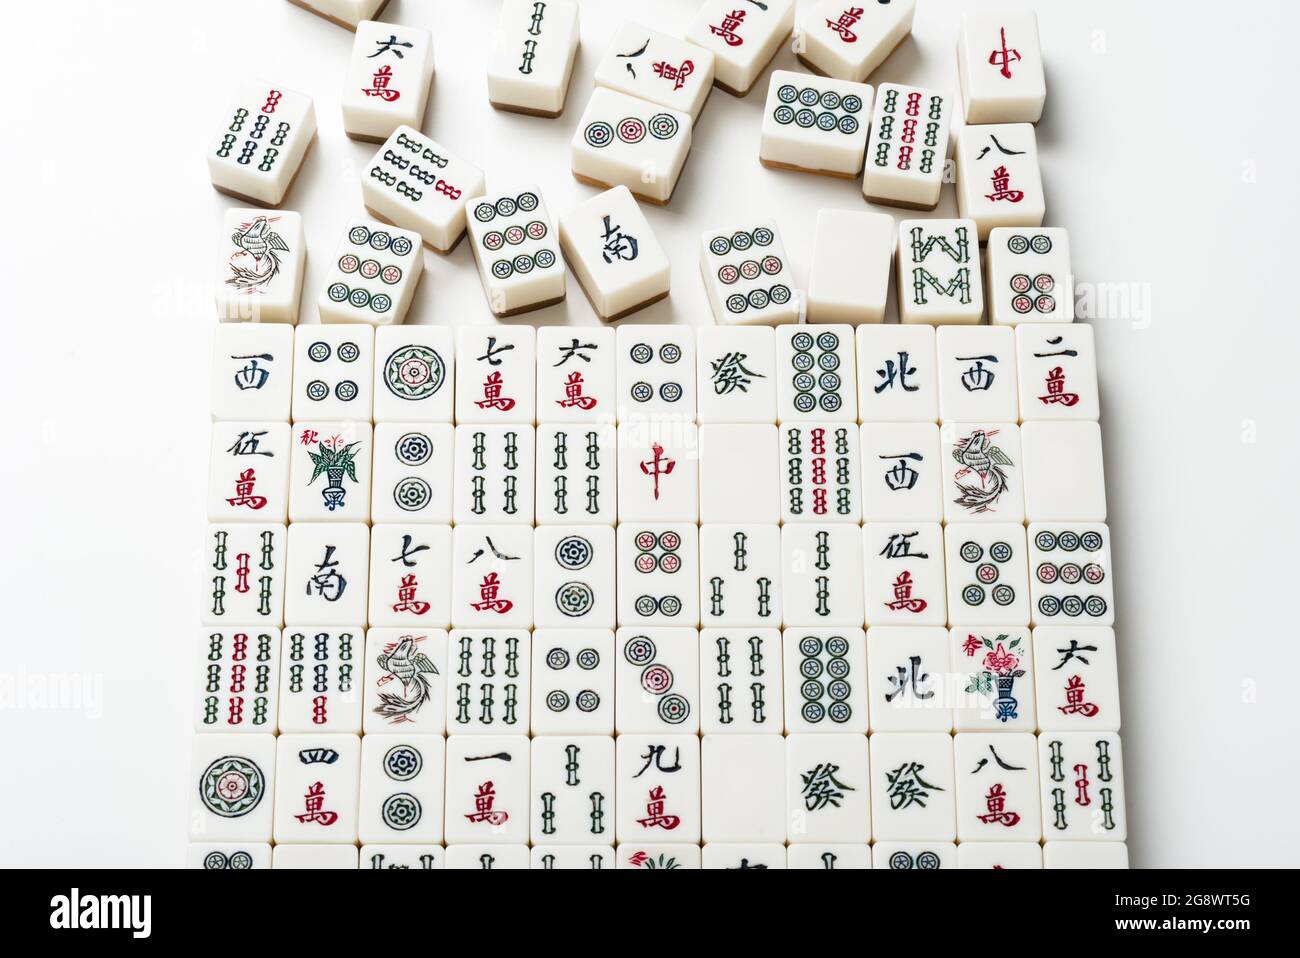 De nombreuses anciennes tuiles de mahjong sur fond blanc. Mahjong est l'ancien jeu de société asiatique. Banque D'Images